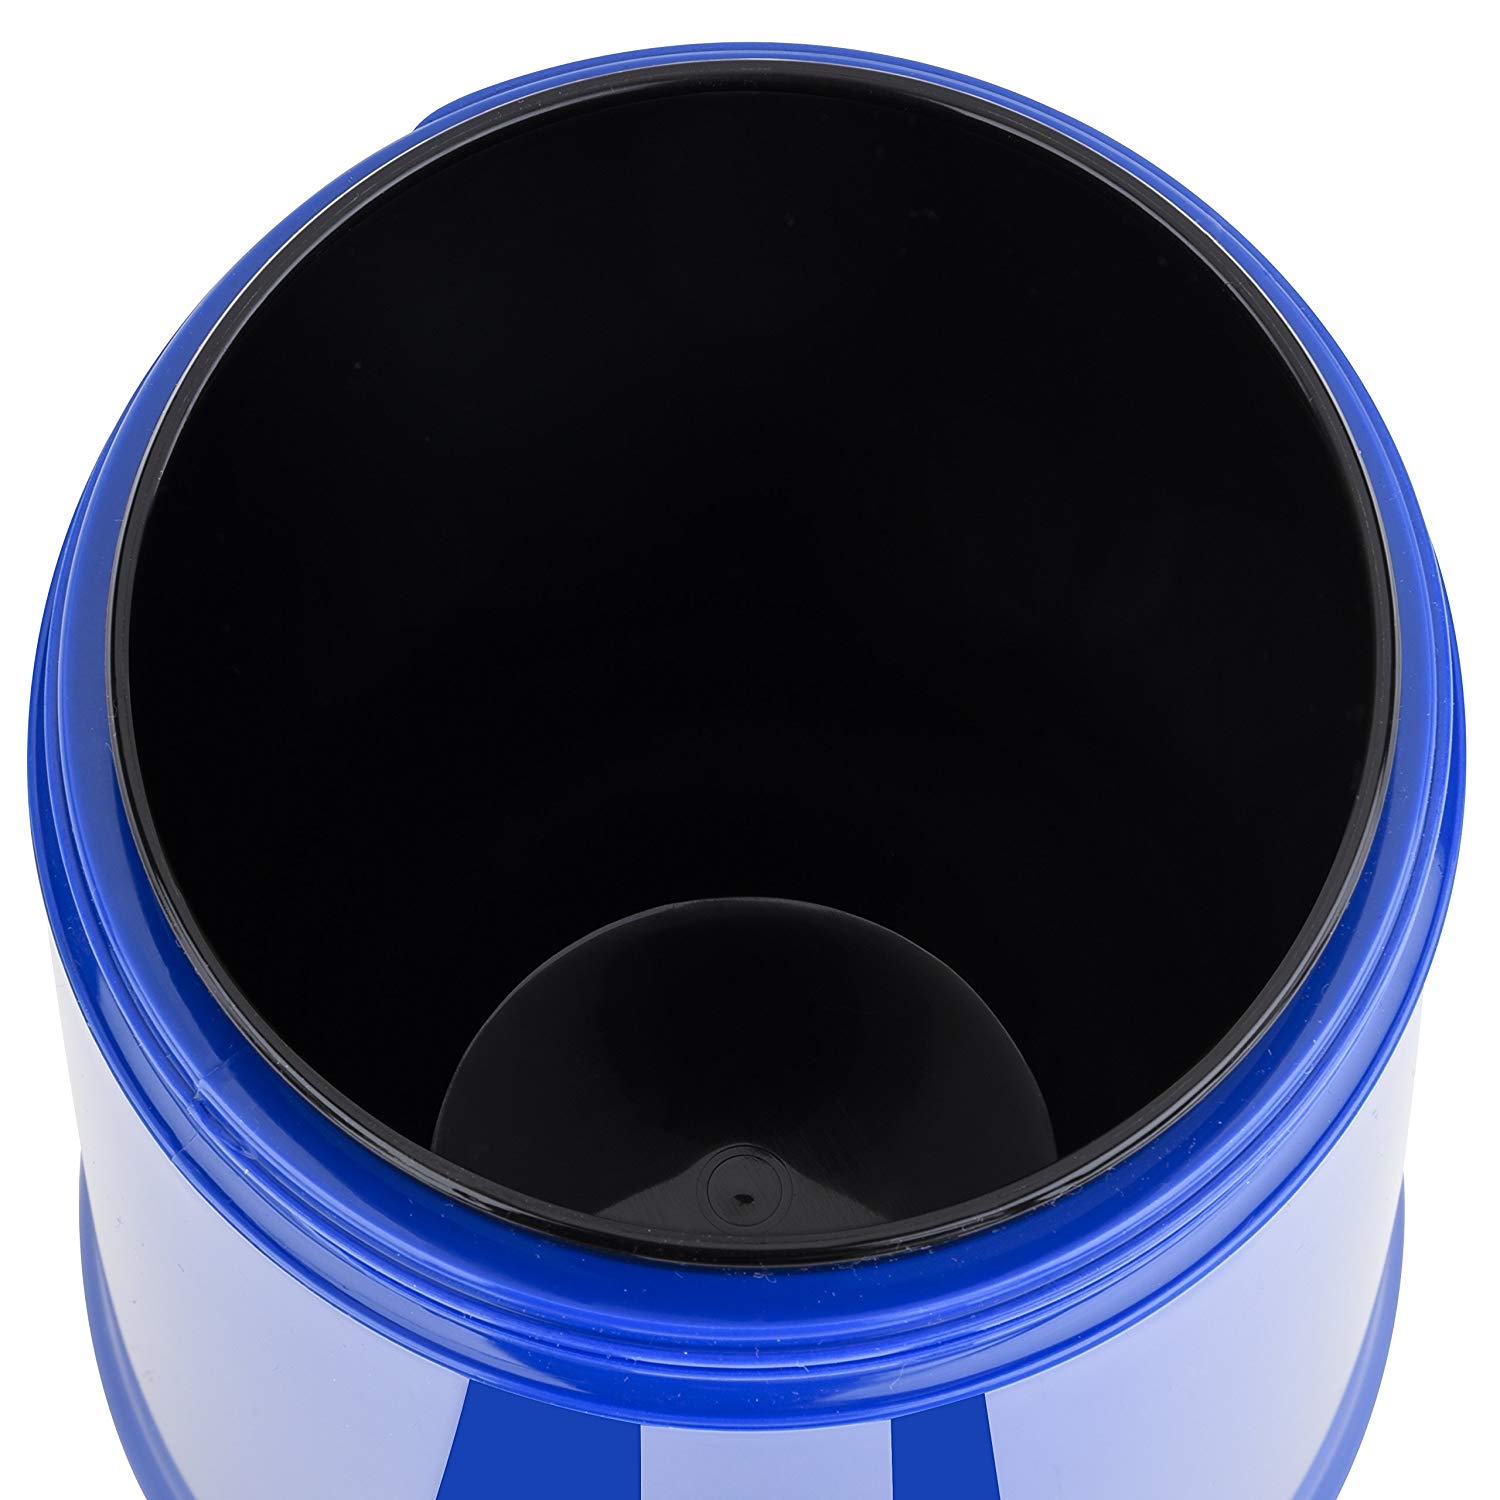 Emsa 514535 - Isolier-Speisegefäß, 1,4 Liter, Mit 2 Speiseeinsätzen, 100% dicht, Blau, Rocket